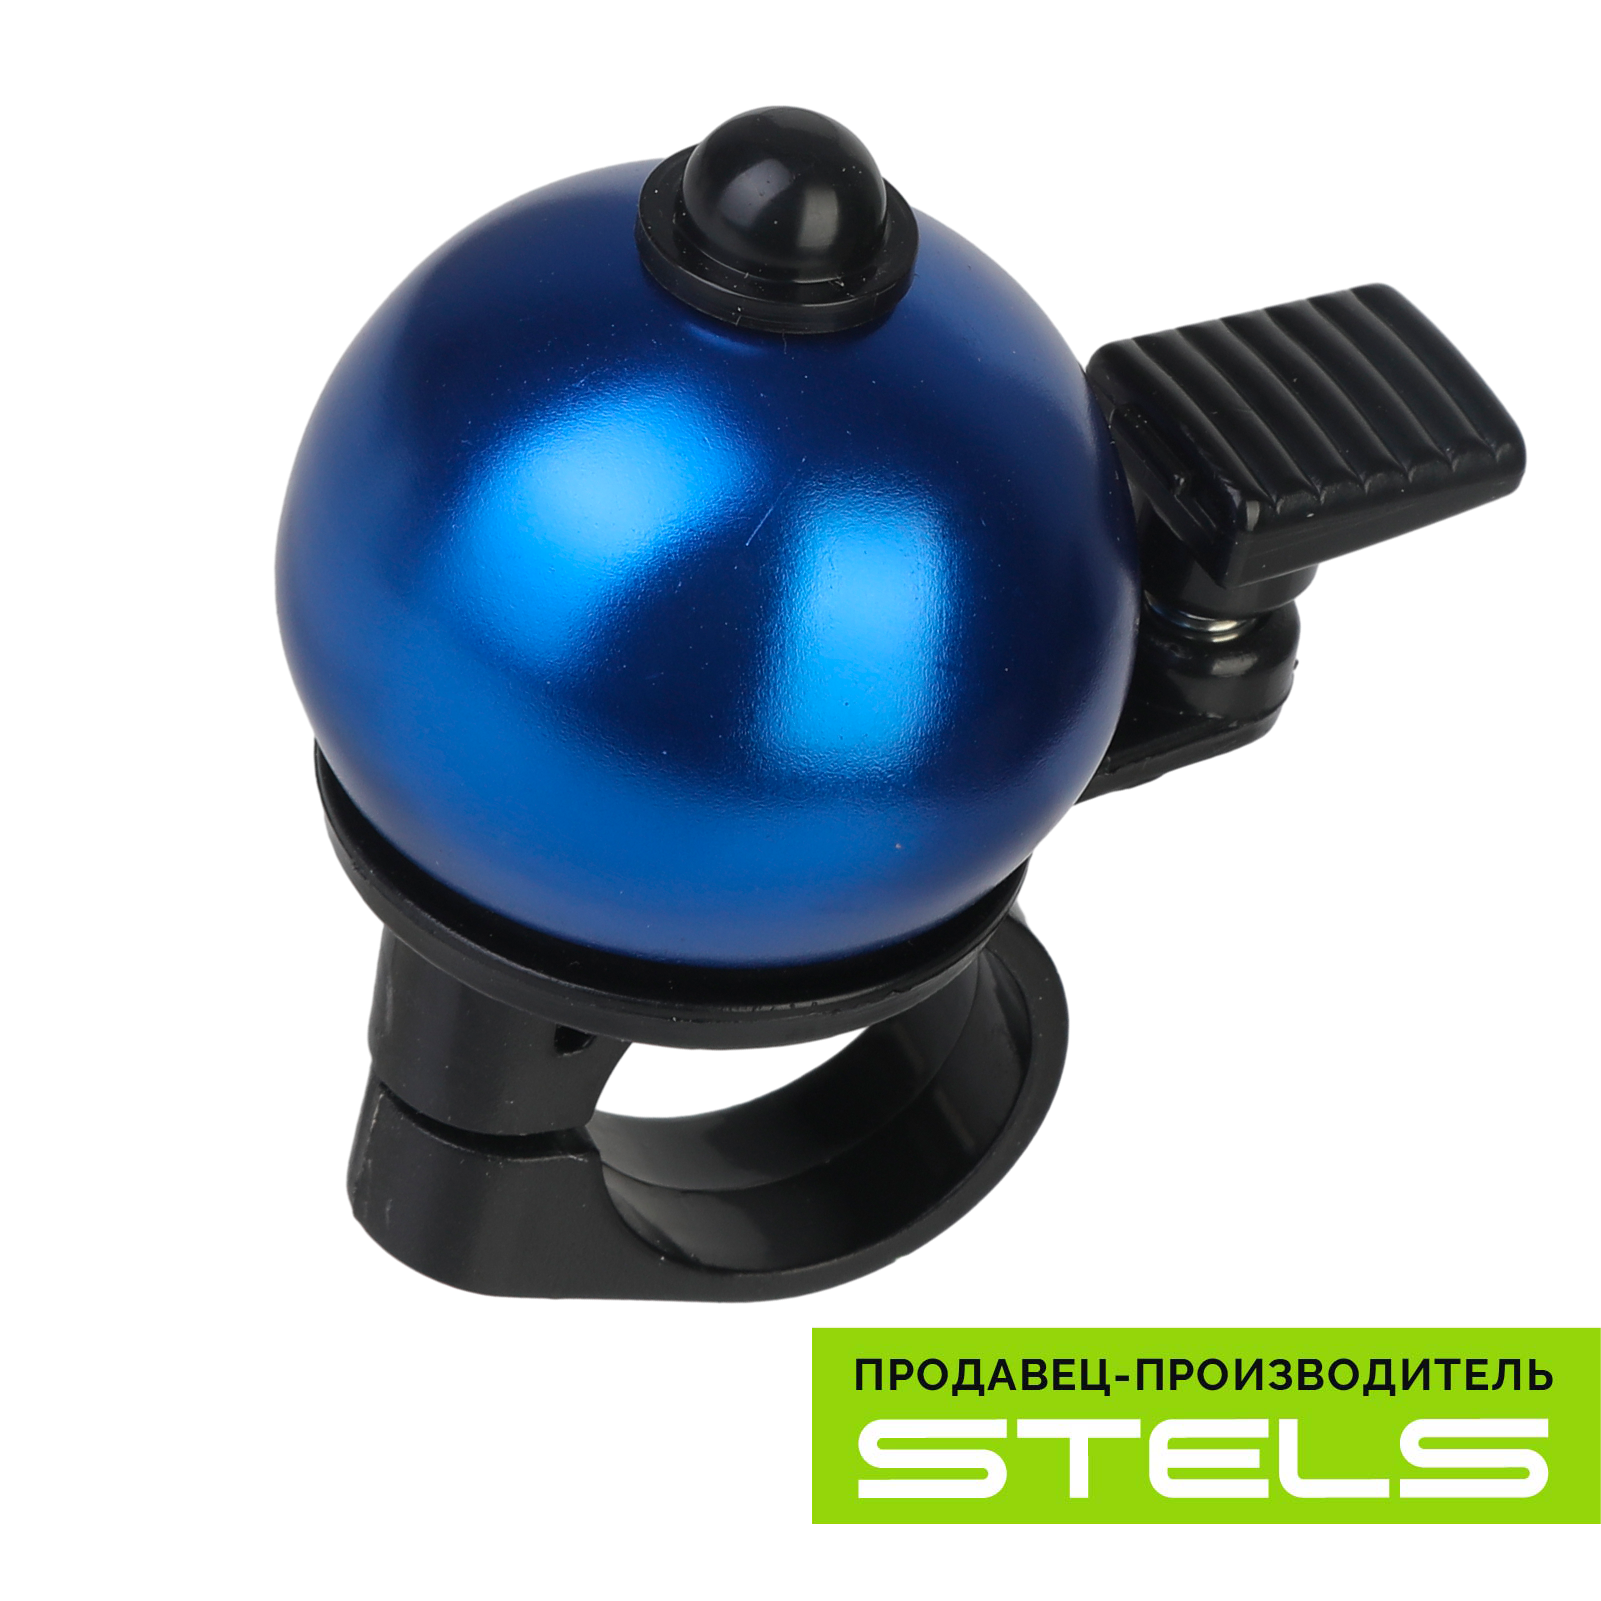 Звонок для велосипеда STELS 13A-09 алюминий/пластик, чёрно-синий